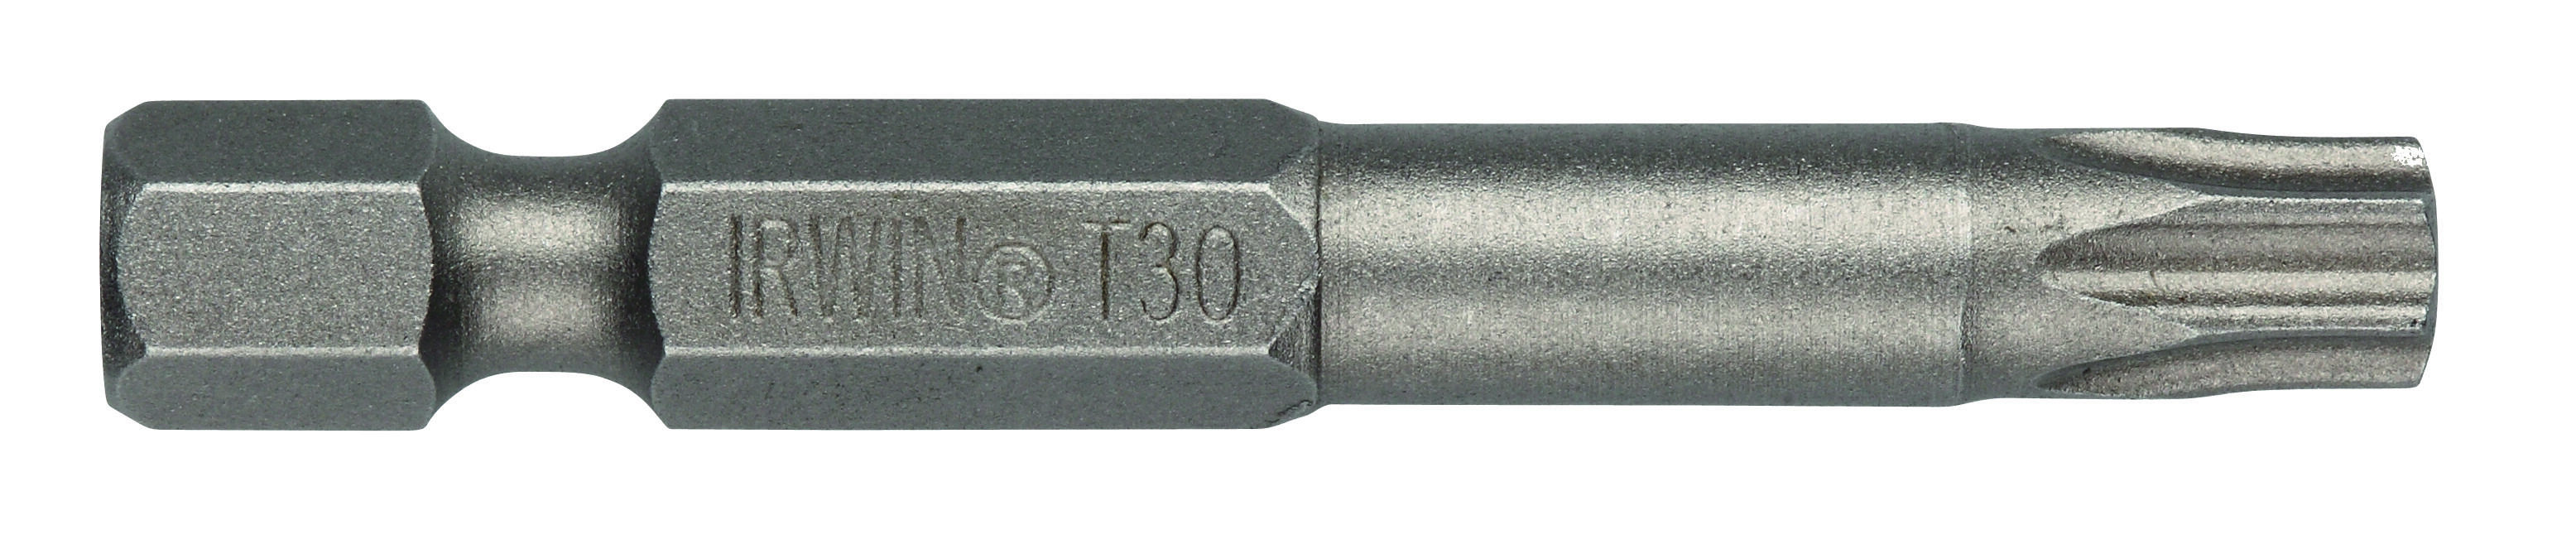 bit nástavec TORX 25  50mm (5ks)  IRWIN 0.09 Kg MAXMIX Sklad14 671152 10